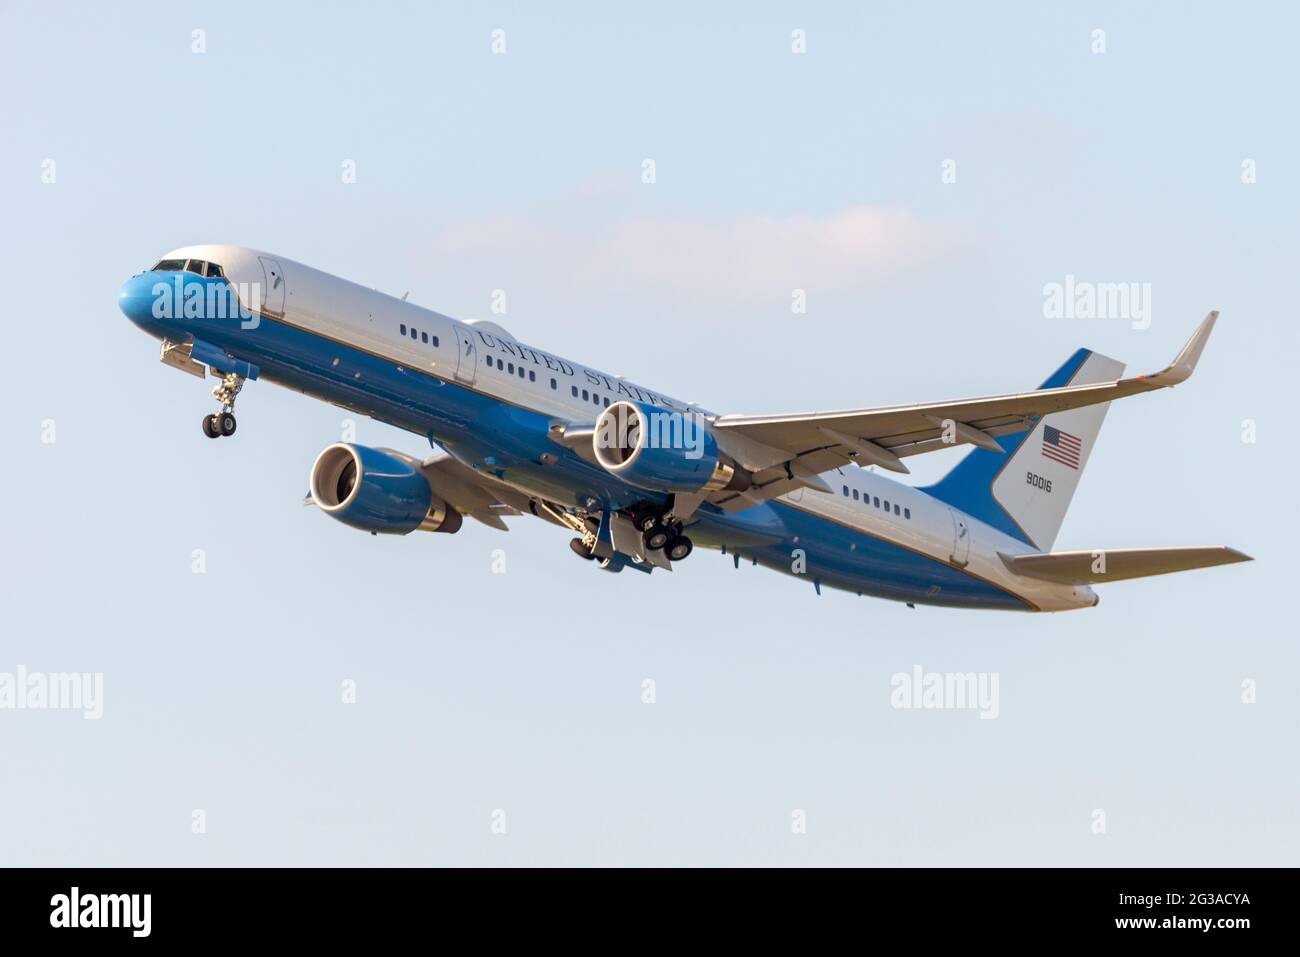 Le Boeing C-32A de la United States Air Force part de l'aéroport de Londres Heathrow après la visite à Londres du président américain Joe Biden. Soutenir l'avion Banque D'Images